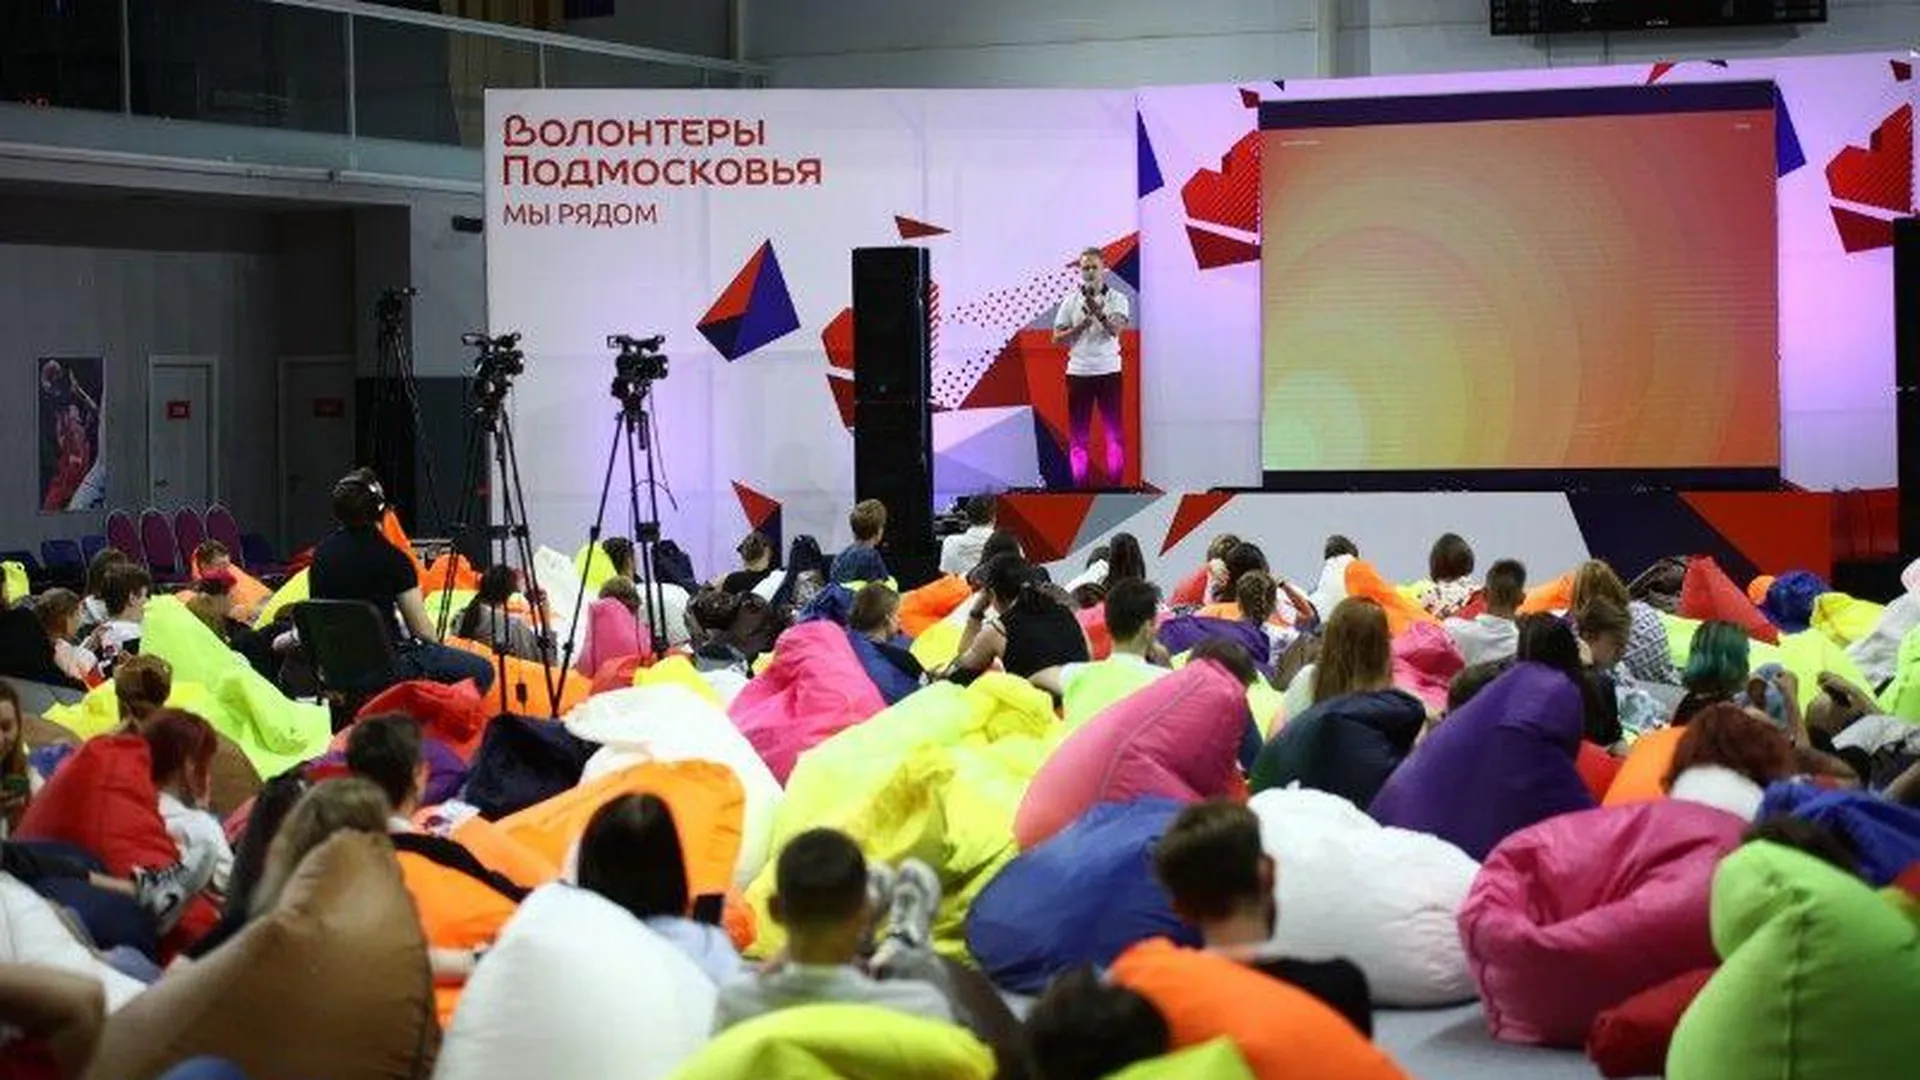 Свыше 350 участников собрал образовательный форум «Волонтеры Подмосковья»